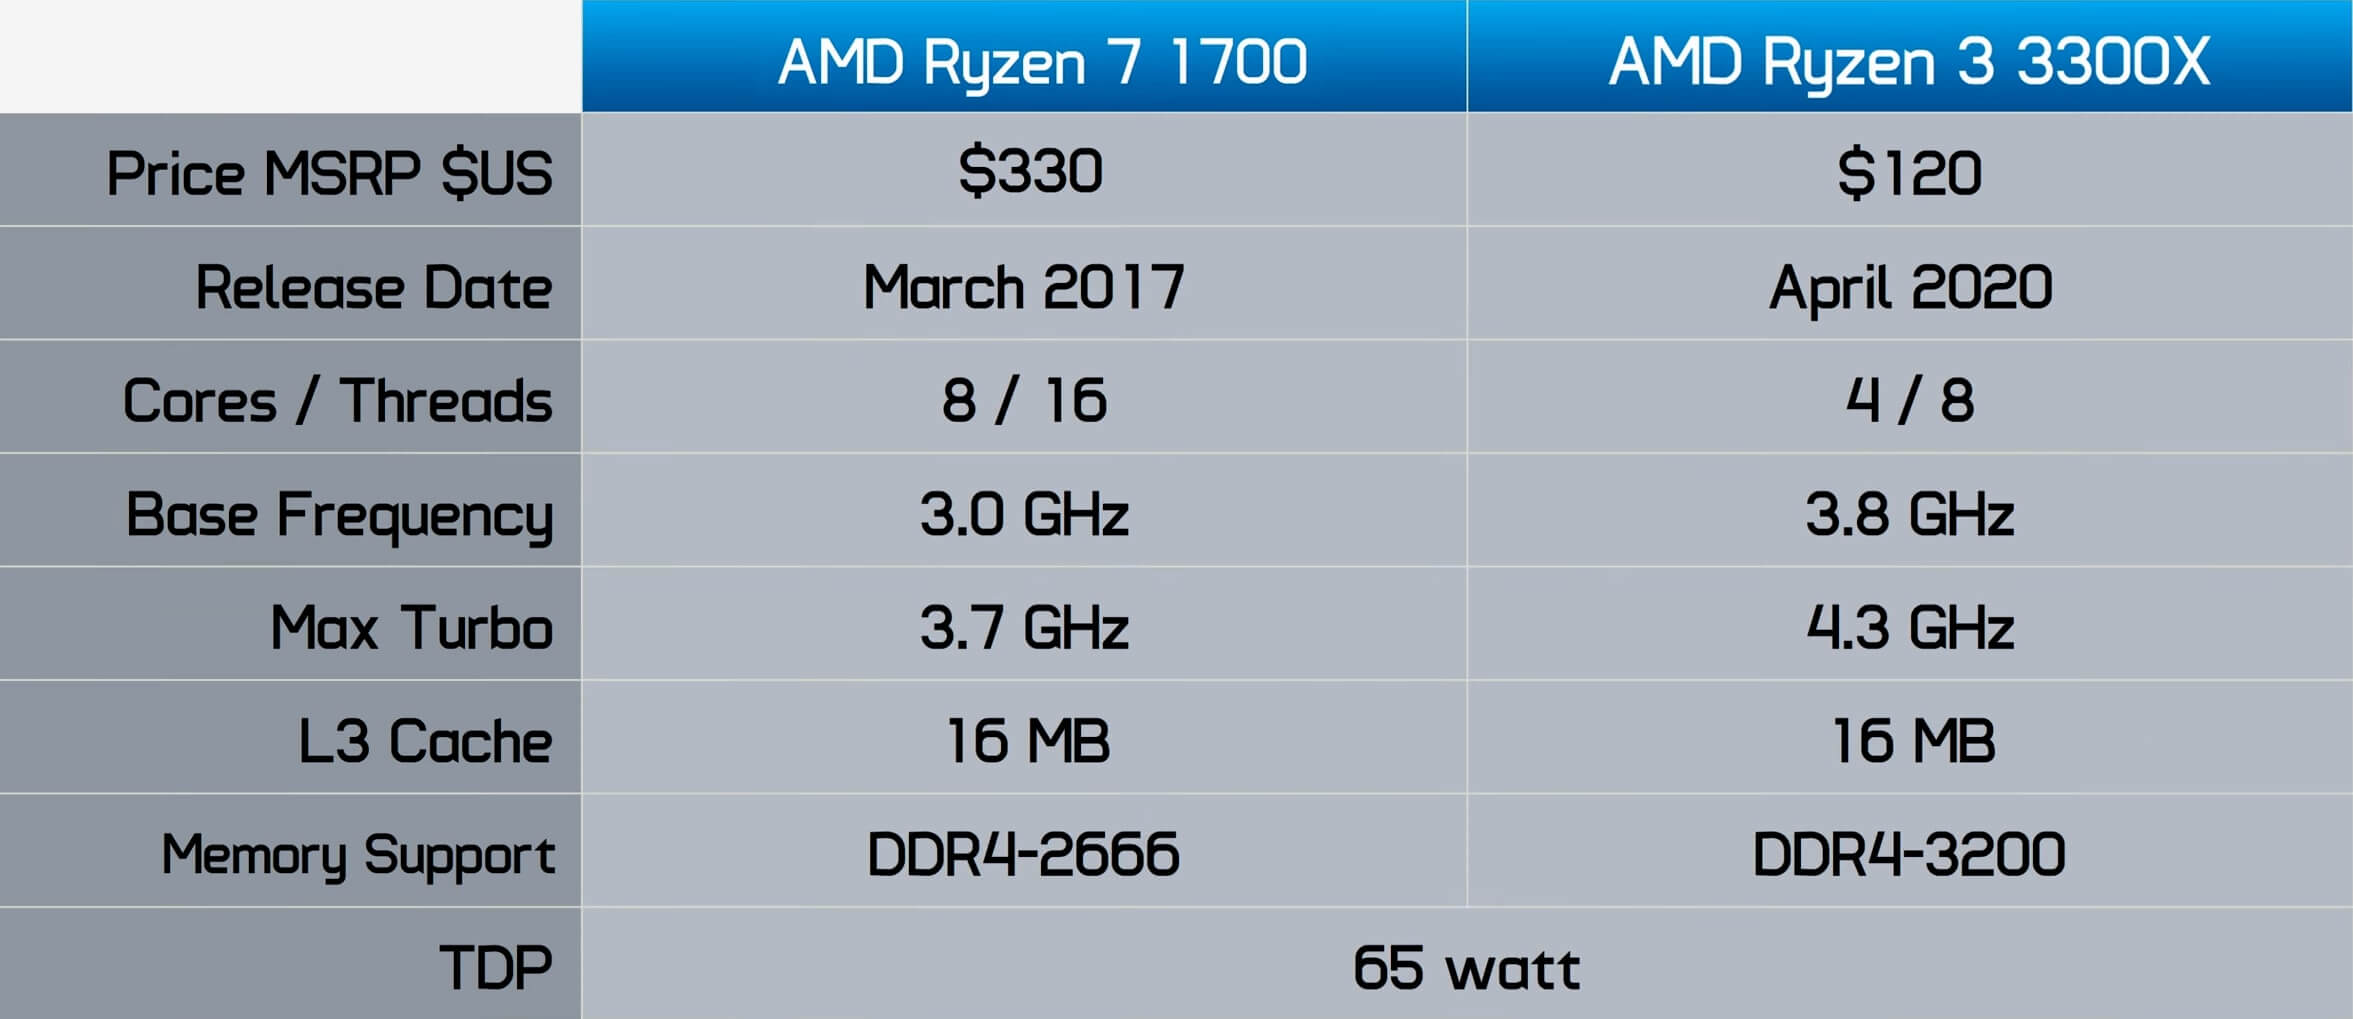 Gehakt Interpunctie hardware Ryzen 7 1700 vs. Ryzen 3 3300X: GPU Scaling | TechSpot